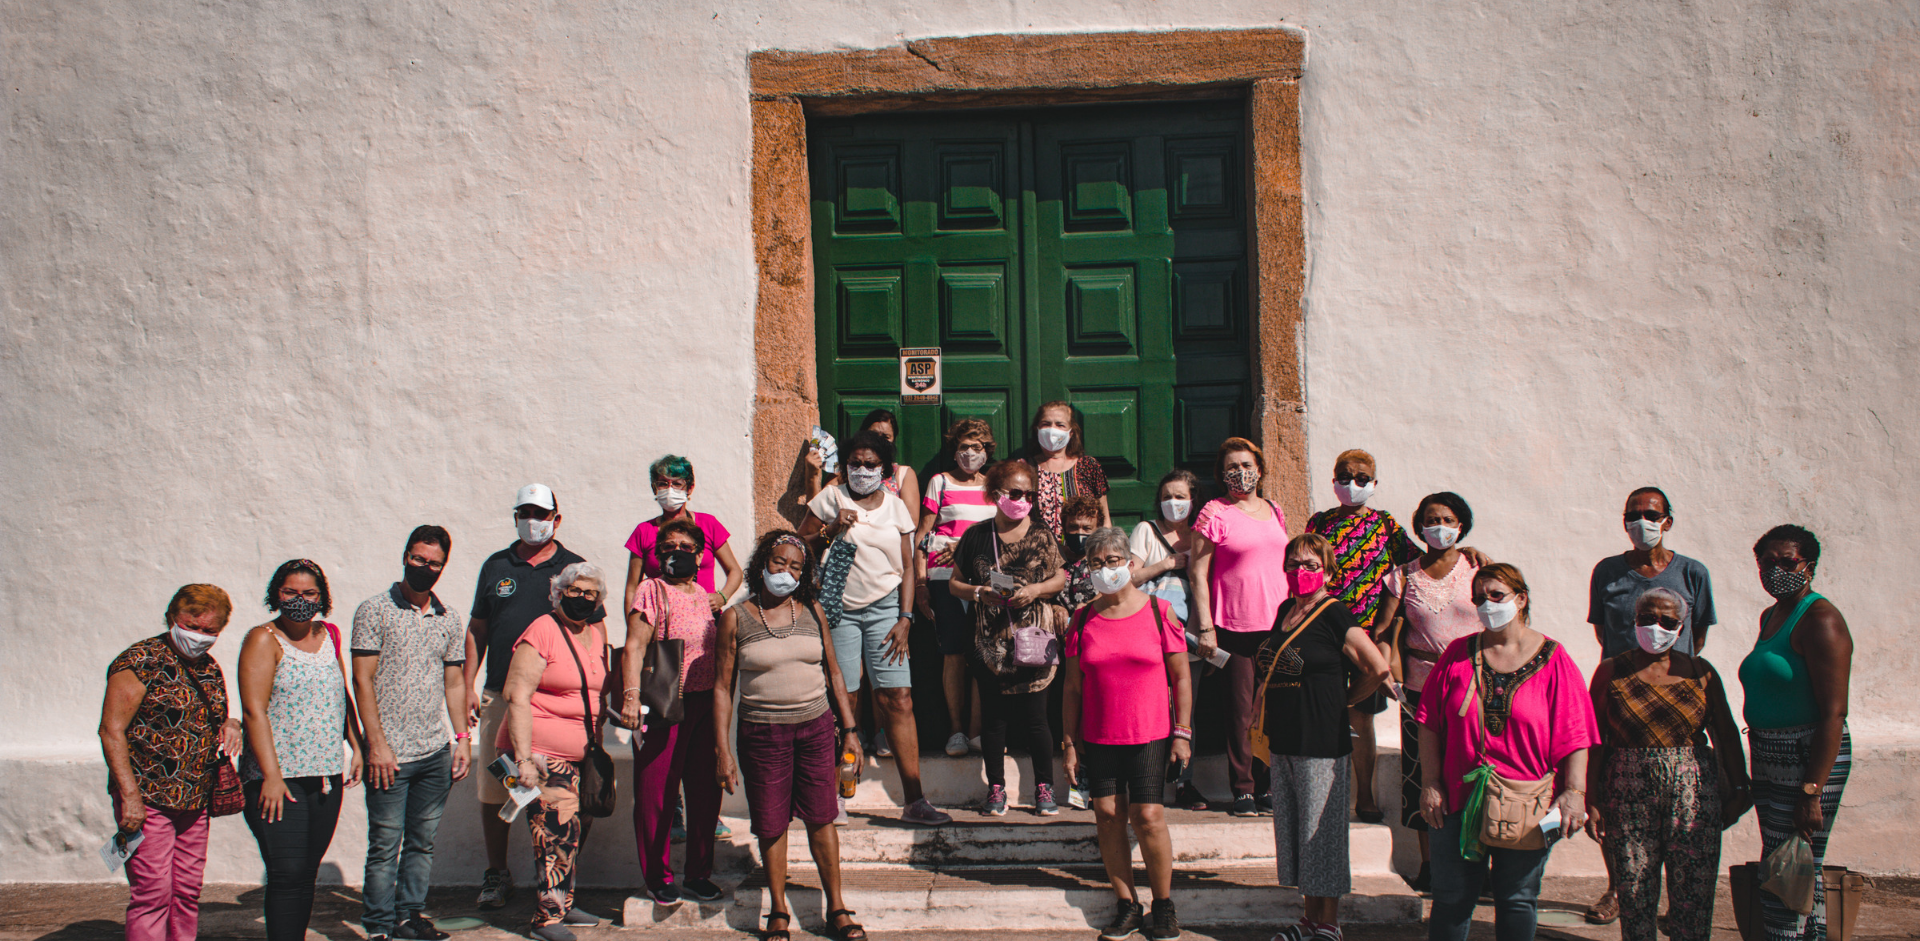 Visitantes da terceira idade conhecem atrativos turísticos de São Pedro da Aldeia em recepção especial